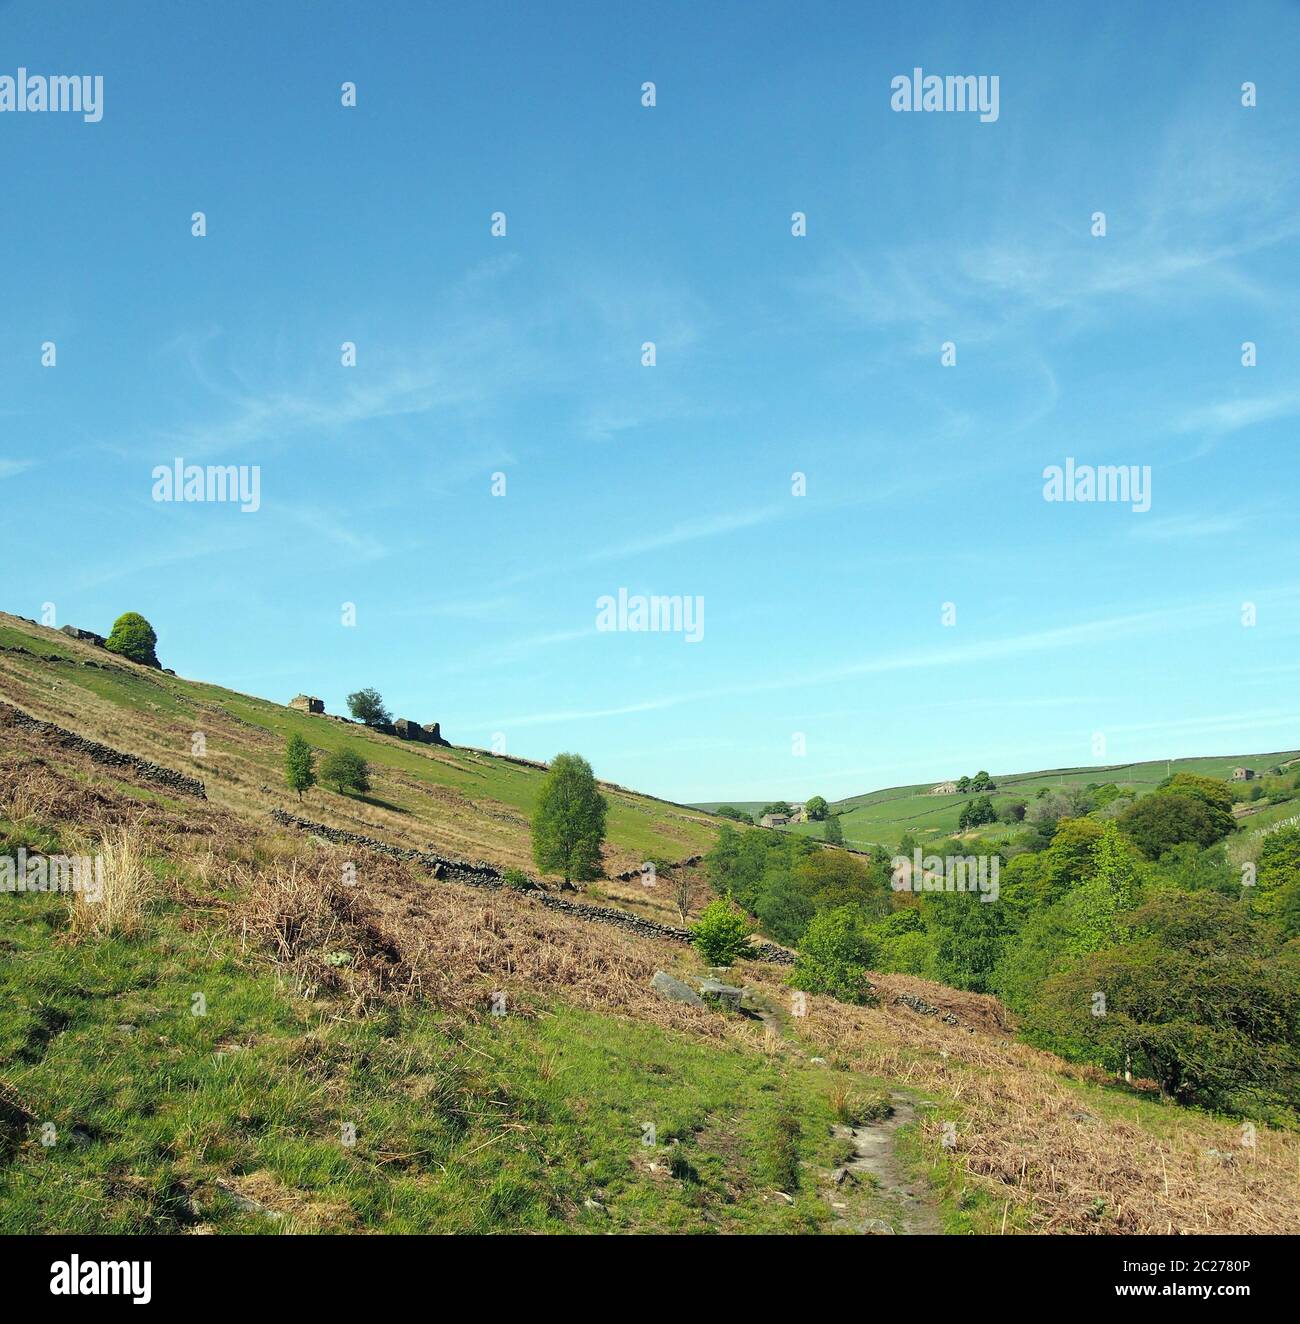 campi verdi collinari con prati ricoperti di erba e vecchie cascine in pietra nelle valli dello yorkshire a crismsworth vicino hardcastle crag Foto Stock